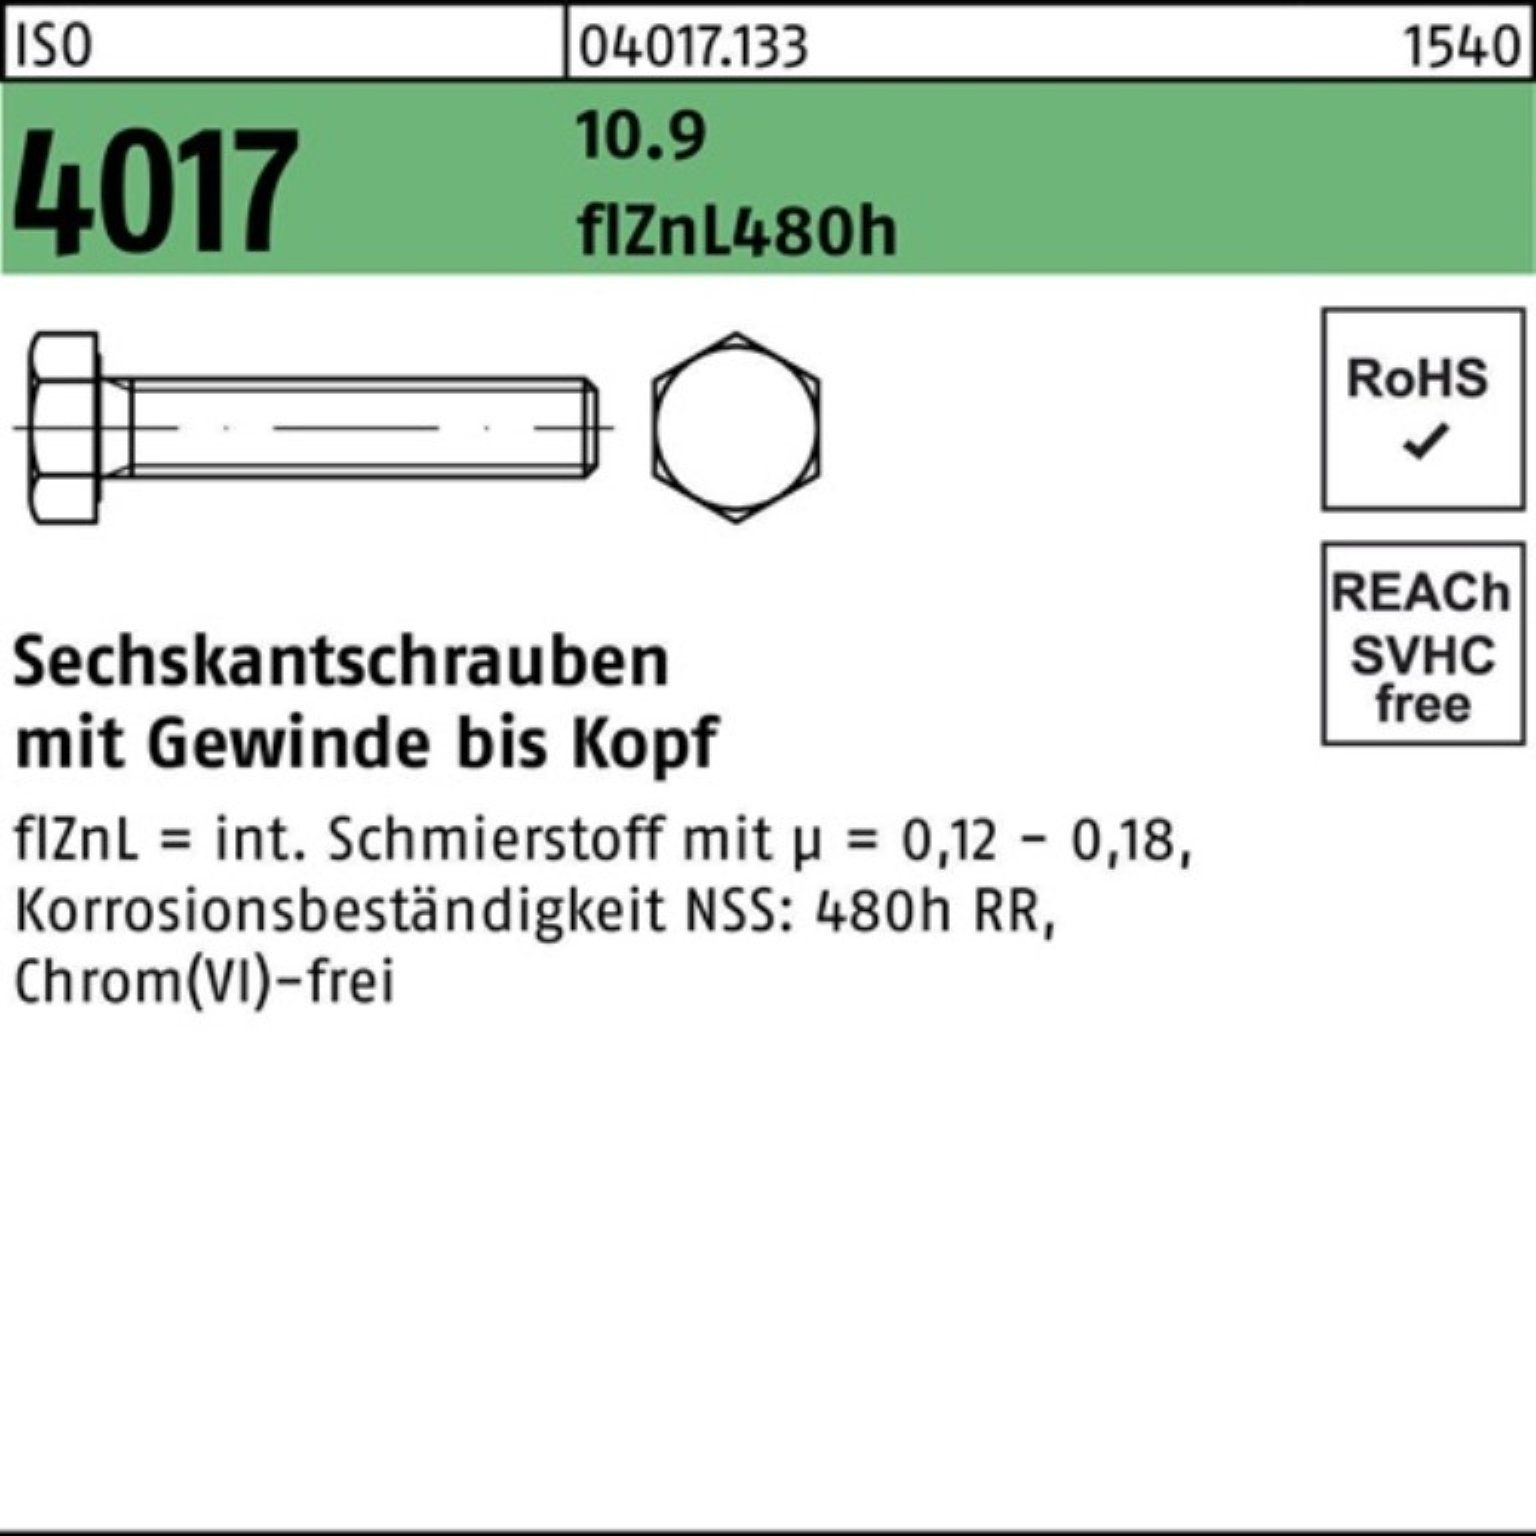 Bufab Sechskantschraube 20 zinklamellenb. 4017 Sechskantschraube M6x ISO 55 200er Pack 10.9 VG